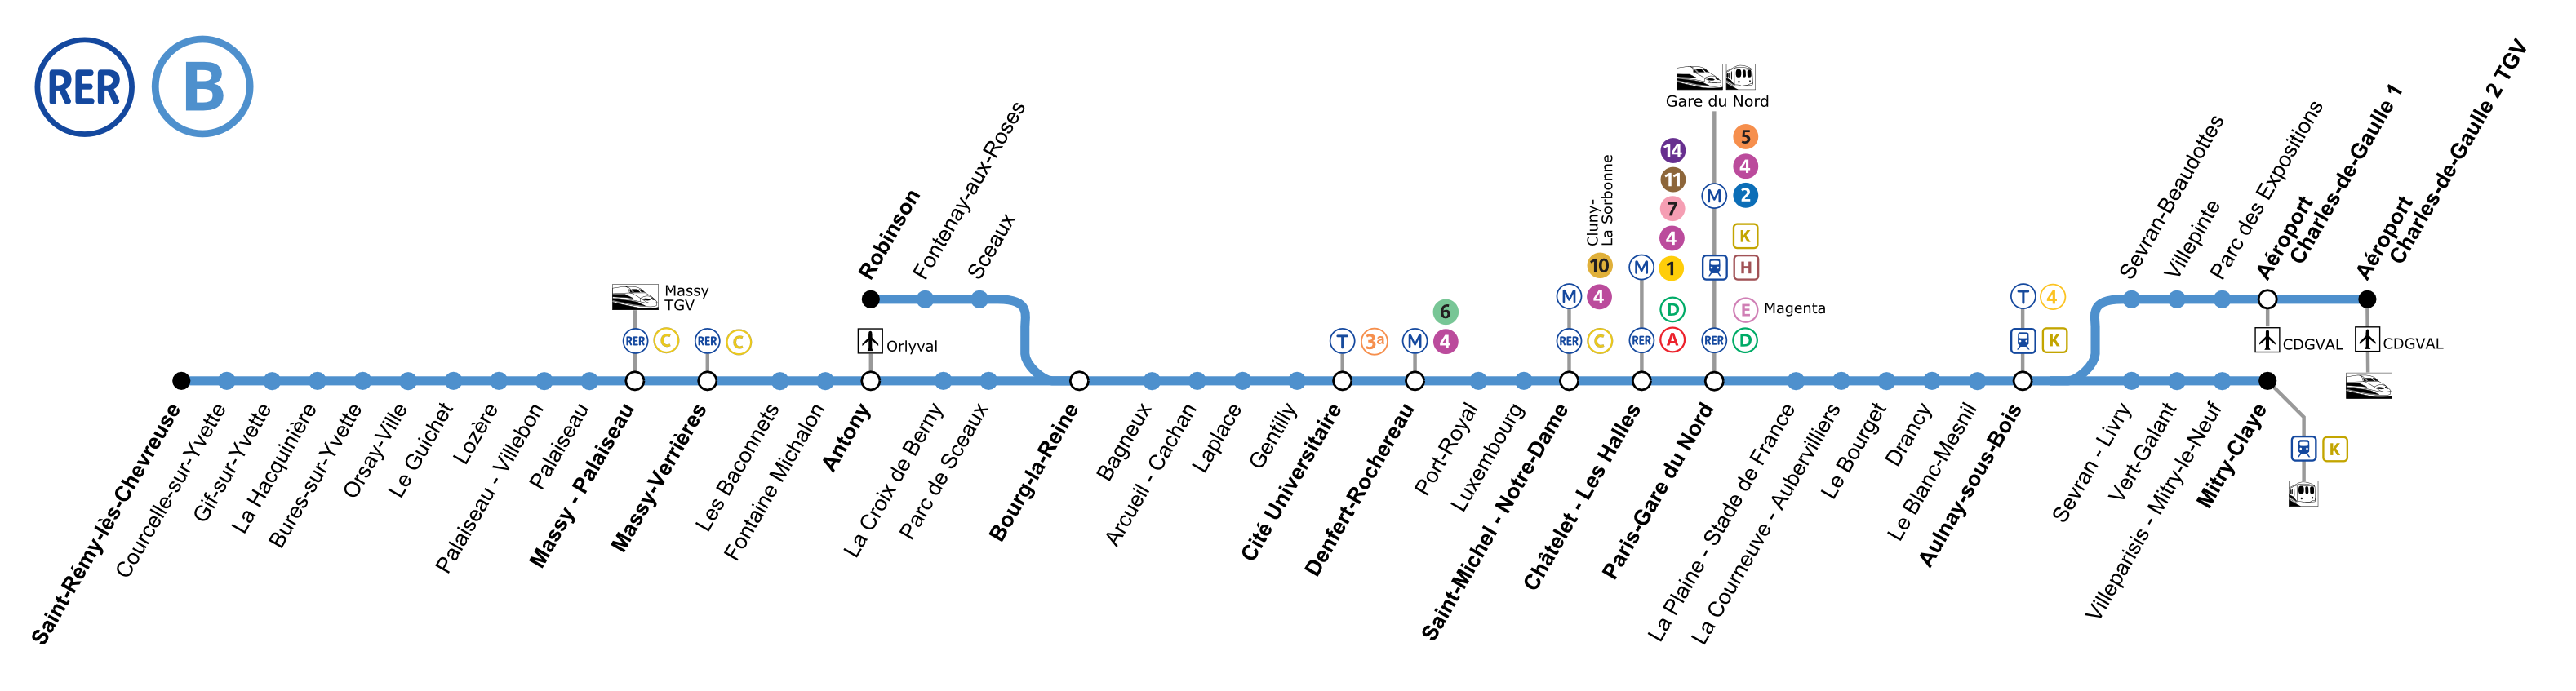 Le plan de la ligne B, avec les correspondances - Téléversé sur Wikipédia par P.poschadel sous licence CC BY-SA 3.0